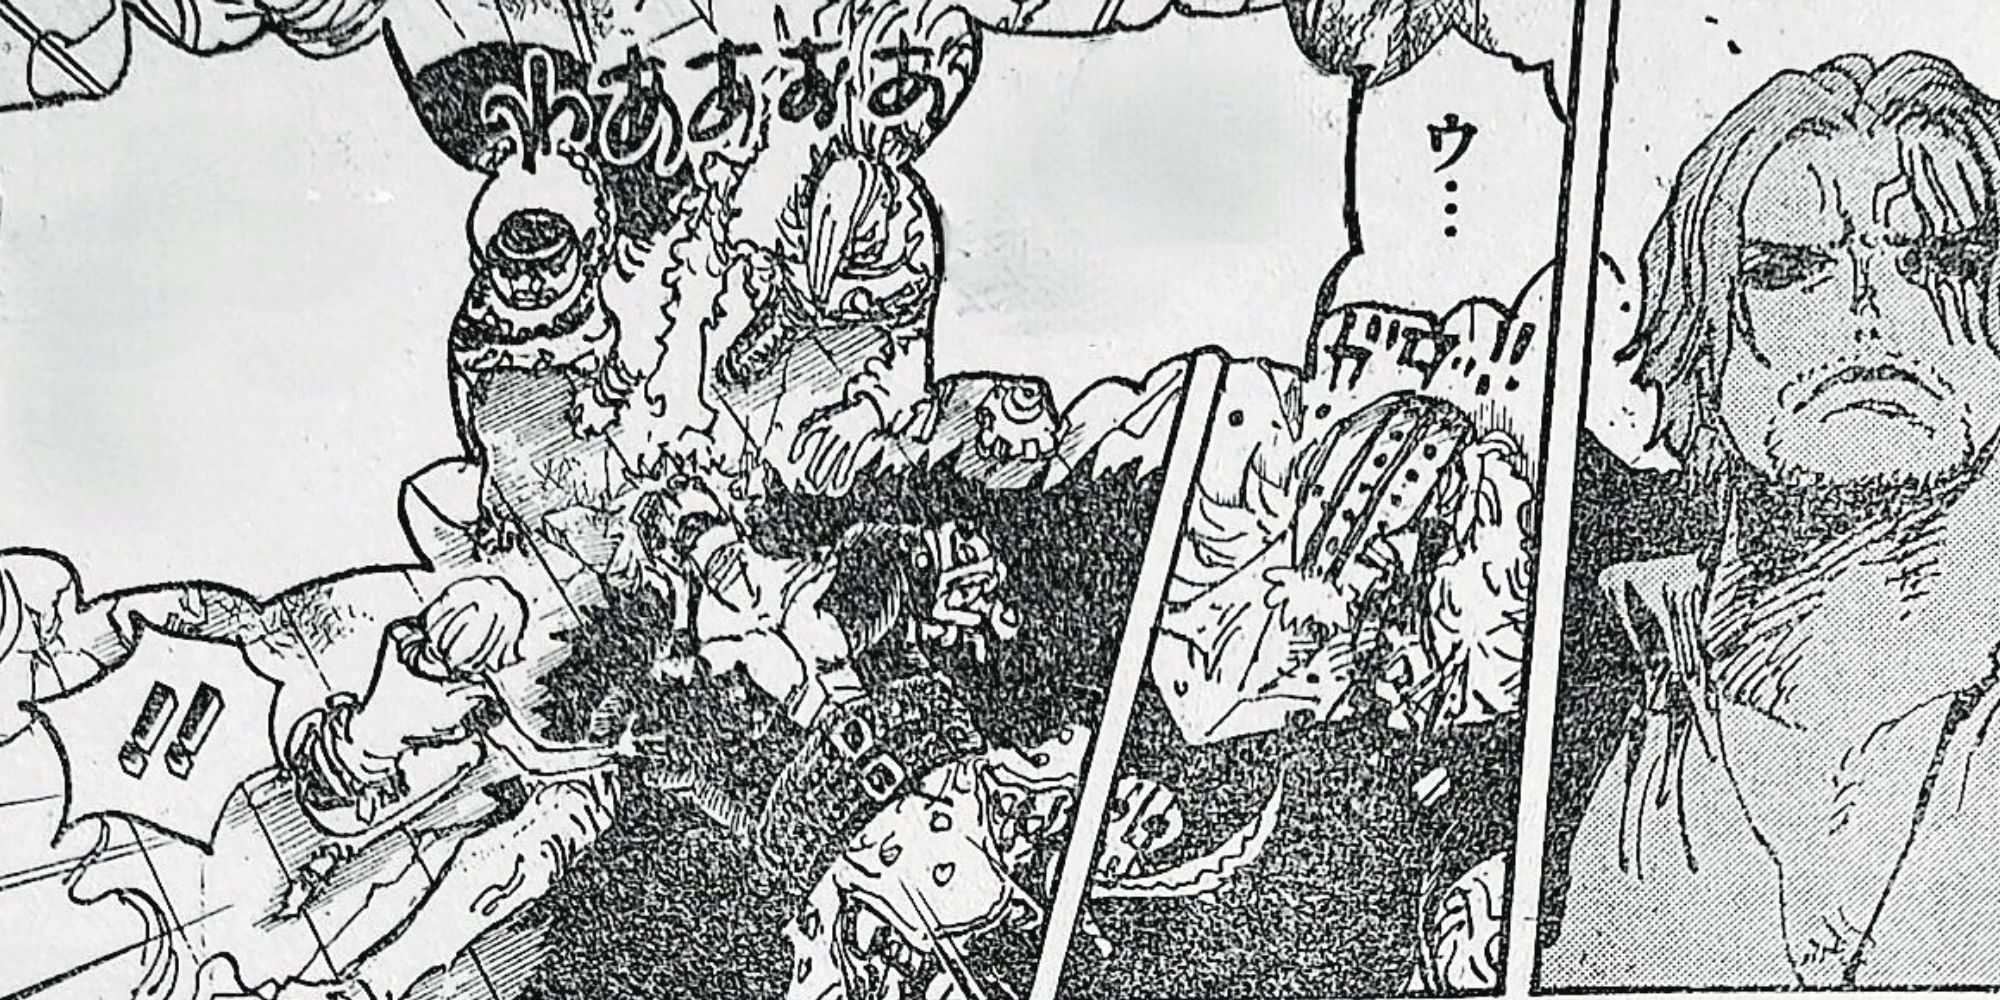 One Piece  Primeiros spoilers do mangá 1079